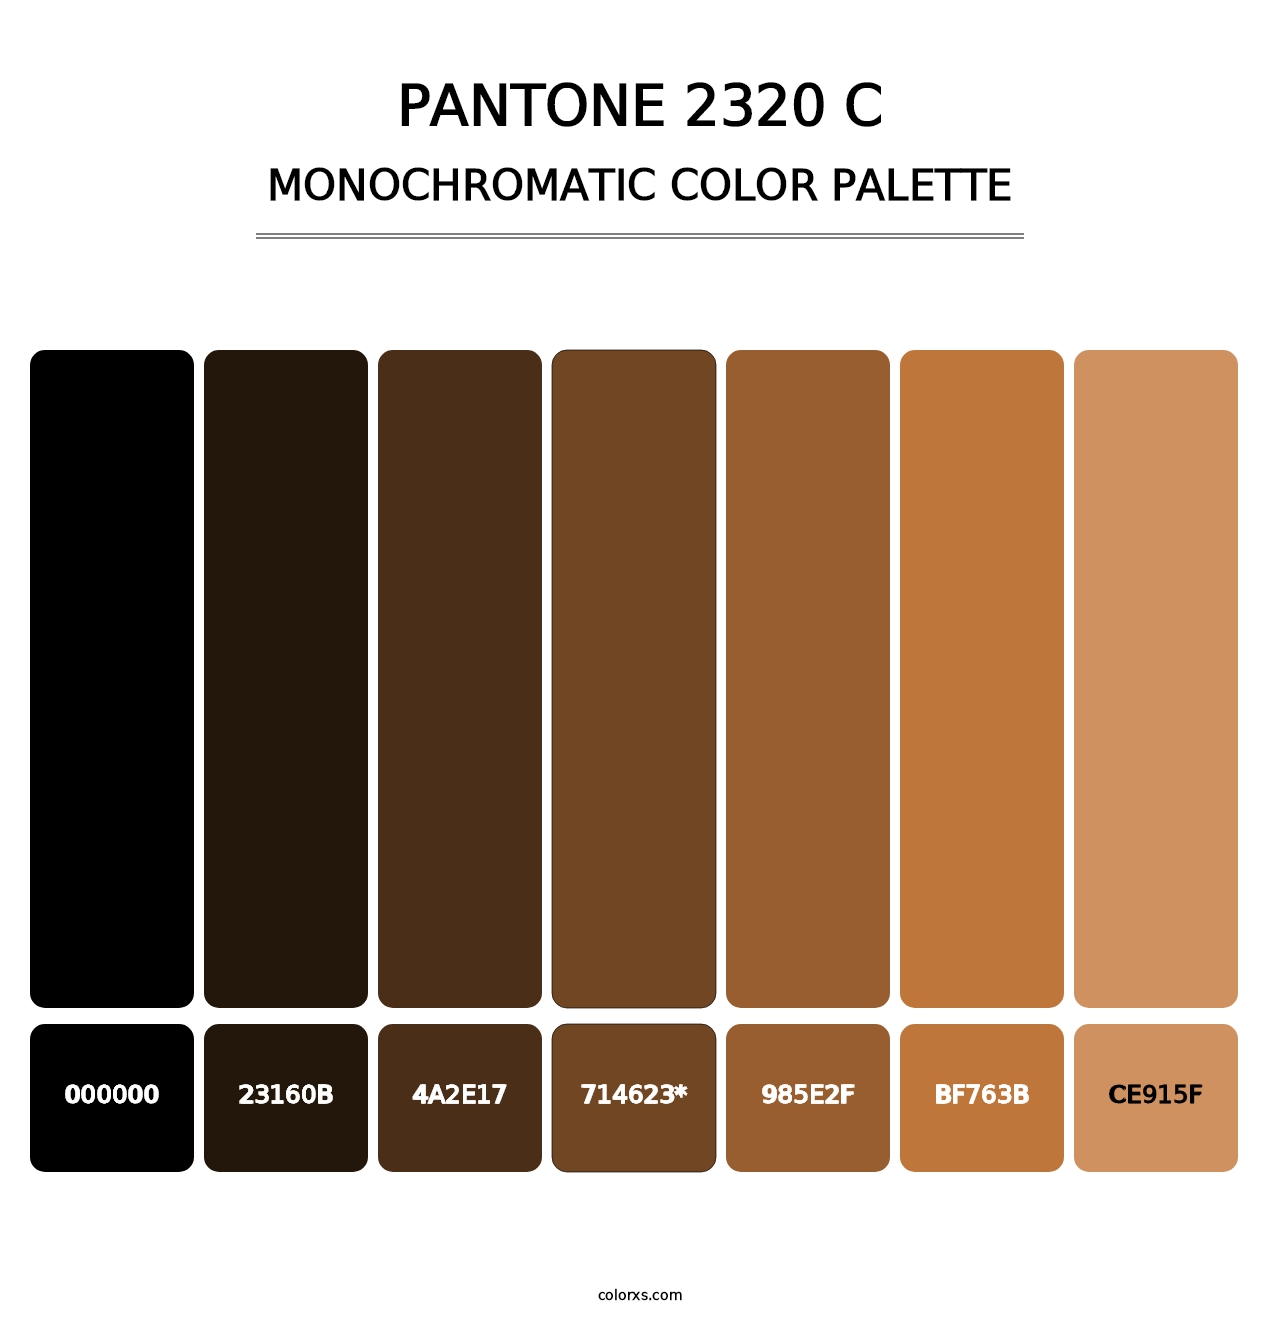 PANTONE 2320 C - Monochromatic Color Palette